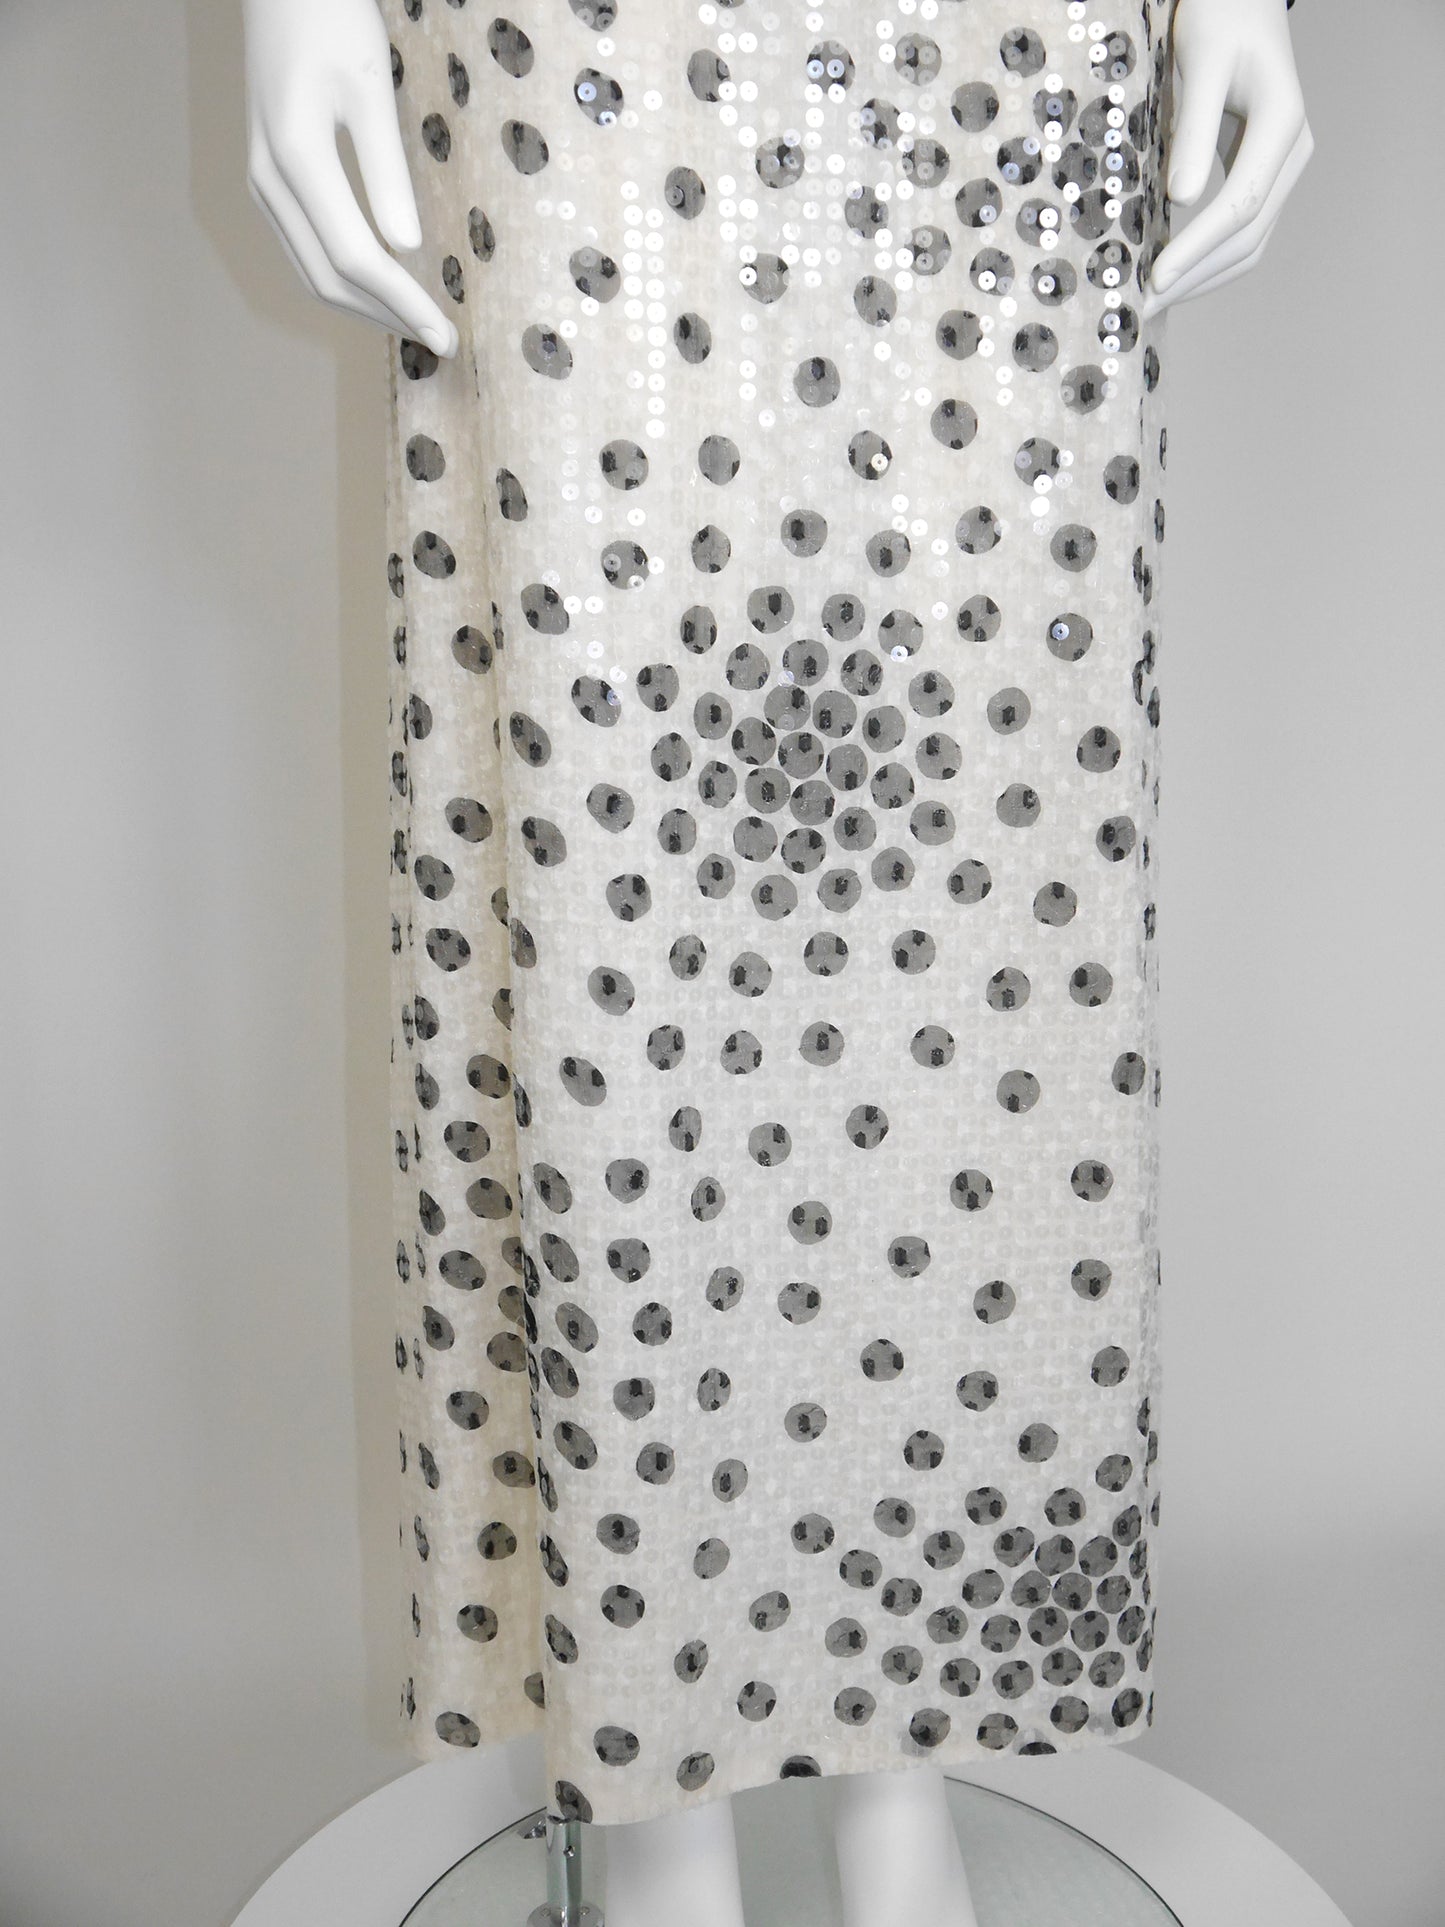 PETER KEPPLER 1980s Vintage Sequined Silk Maxi Evening Gown Unworn Size S